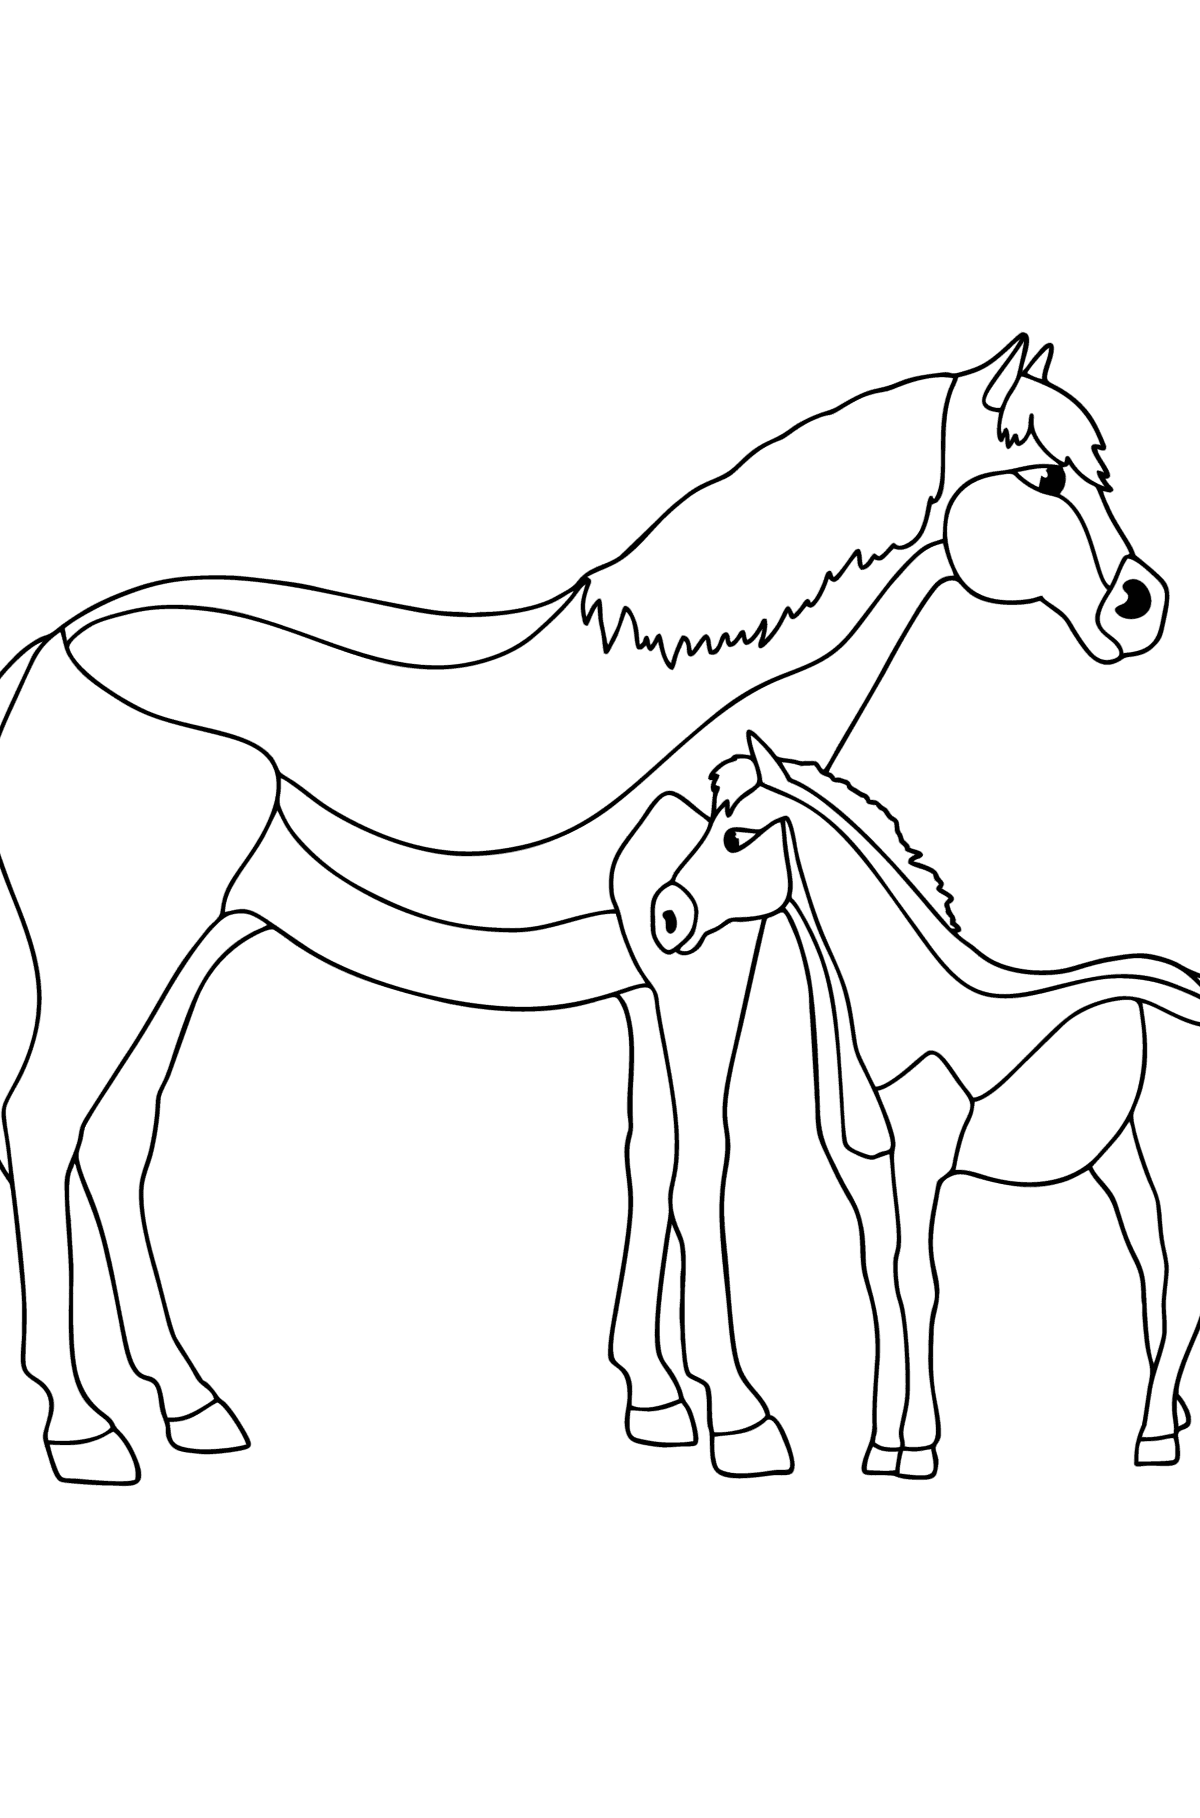 Målarbild Häst och föl - Målarbilder För barn